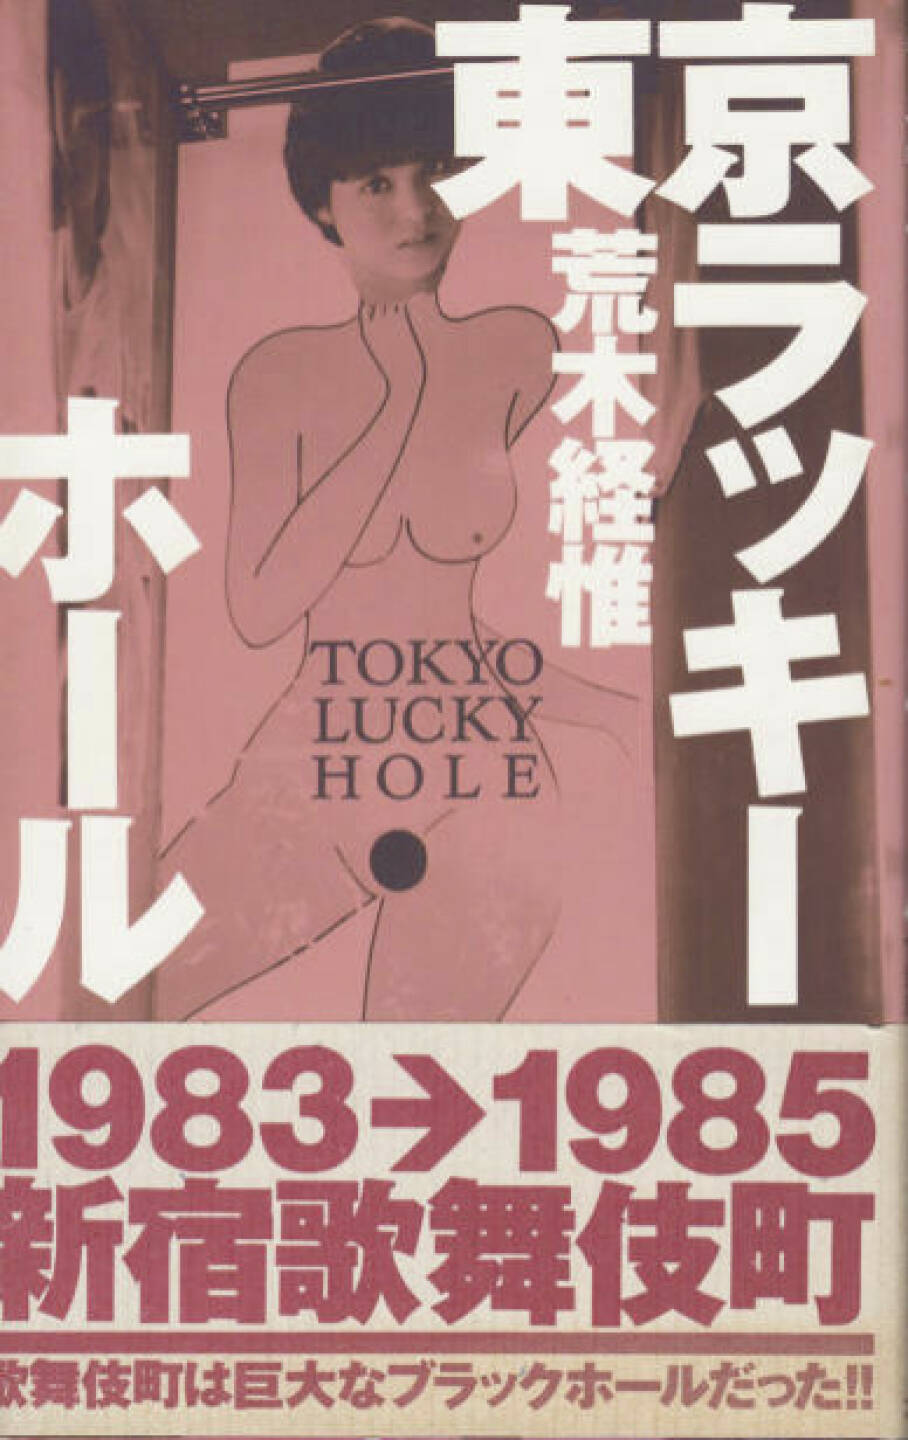 Nobuyoshi Araki - Tokyo Lucky Hole, Preis: 200-300 Euro, http://josefchladek.com/book/nobuyoshi_araki_-_tokyo_lucky_hole